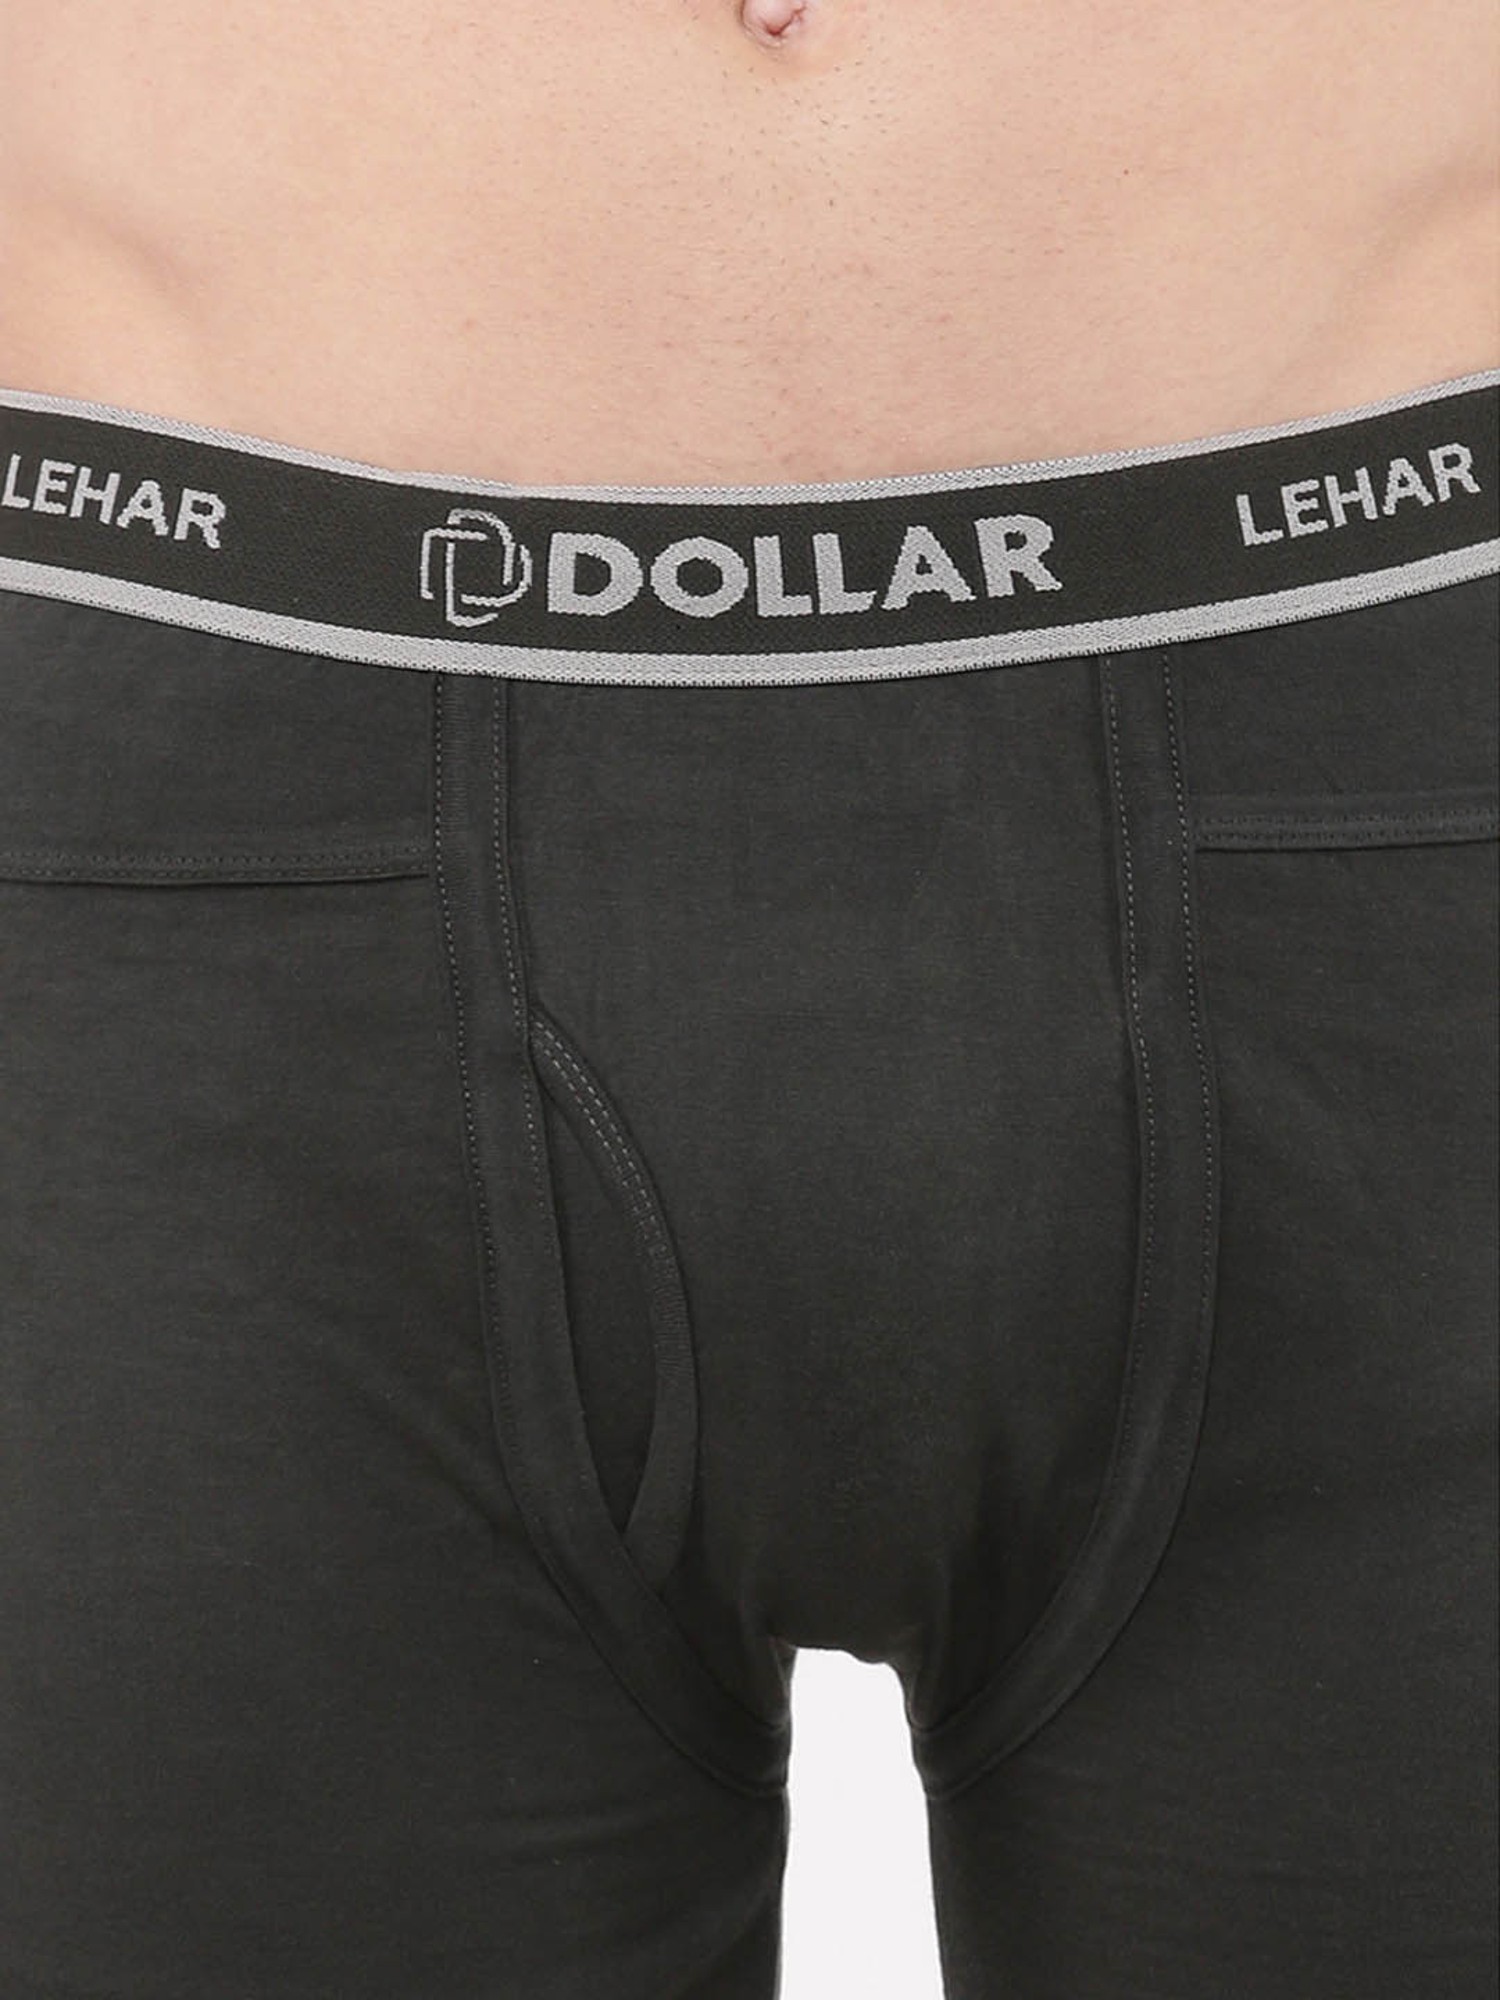 Buy Multi Trunks for Men by DOLLAR LEHAR Online